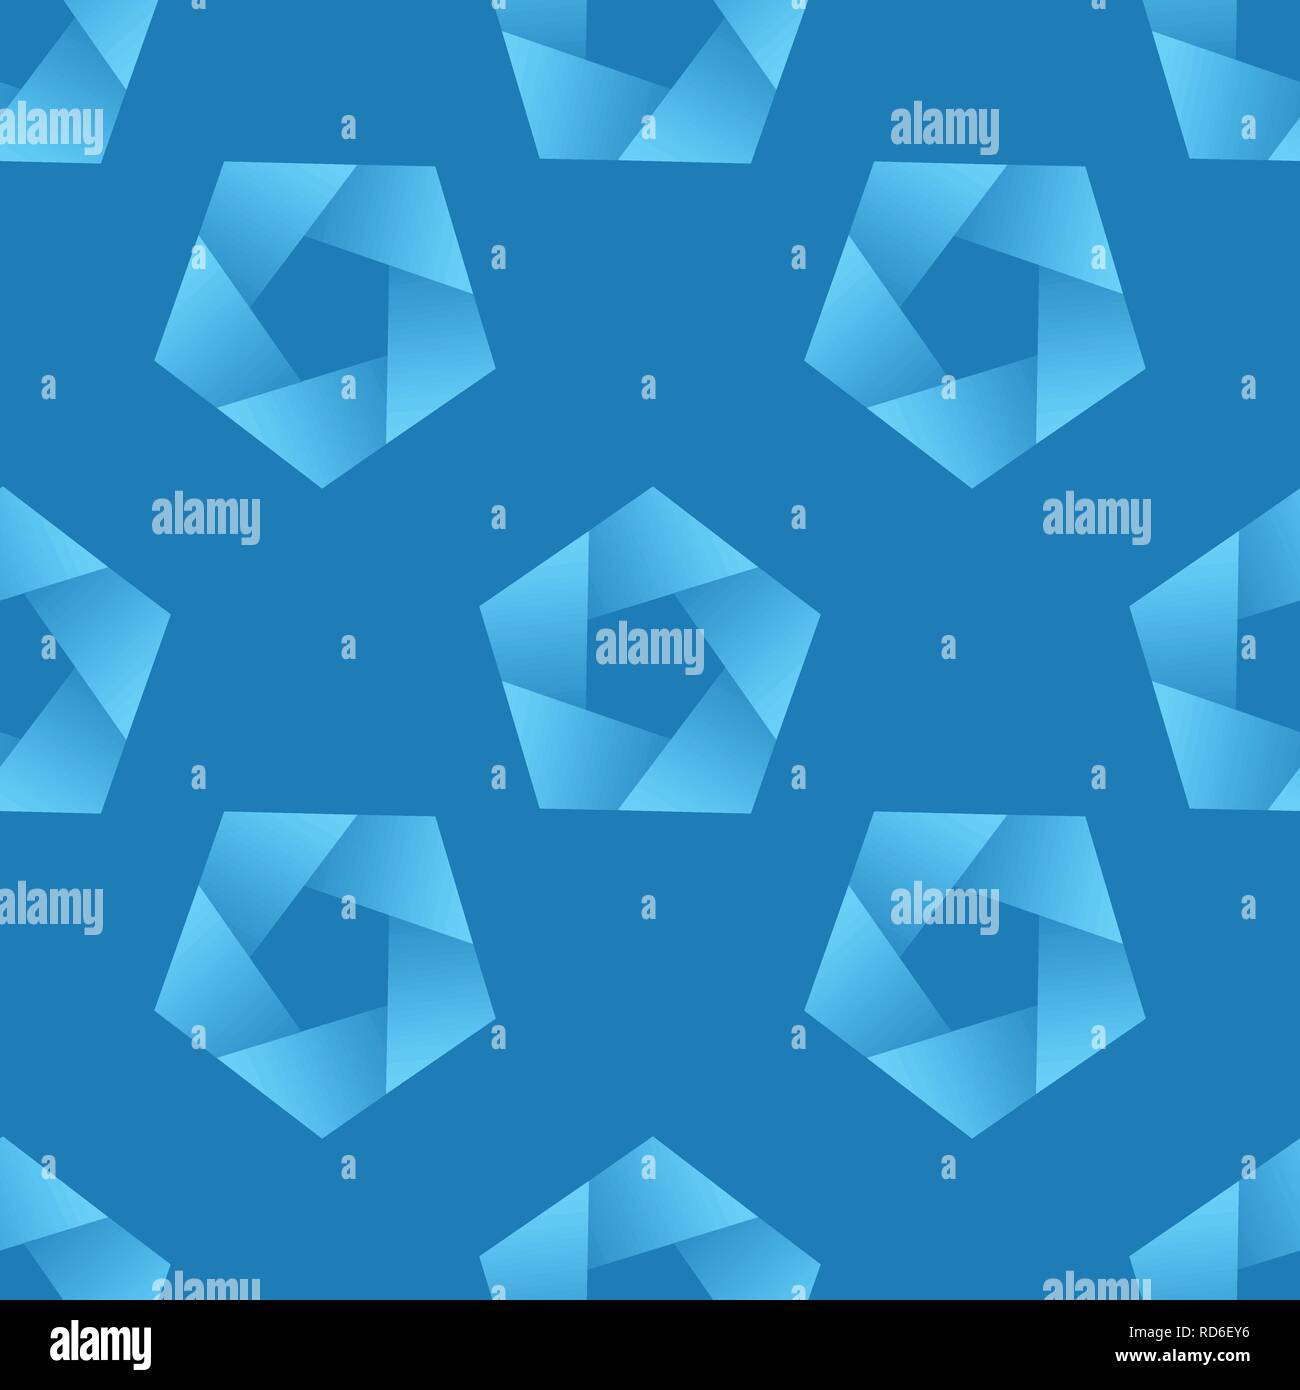 Zusammenfassung nahtlose Muster mit fünfecken. Blau vector Hintergrund. Stock Vektor